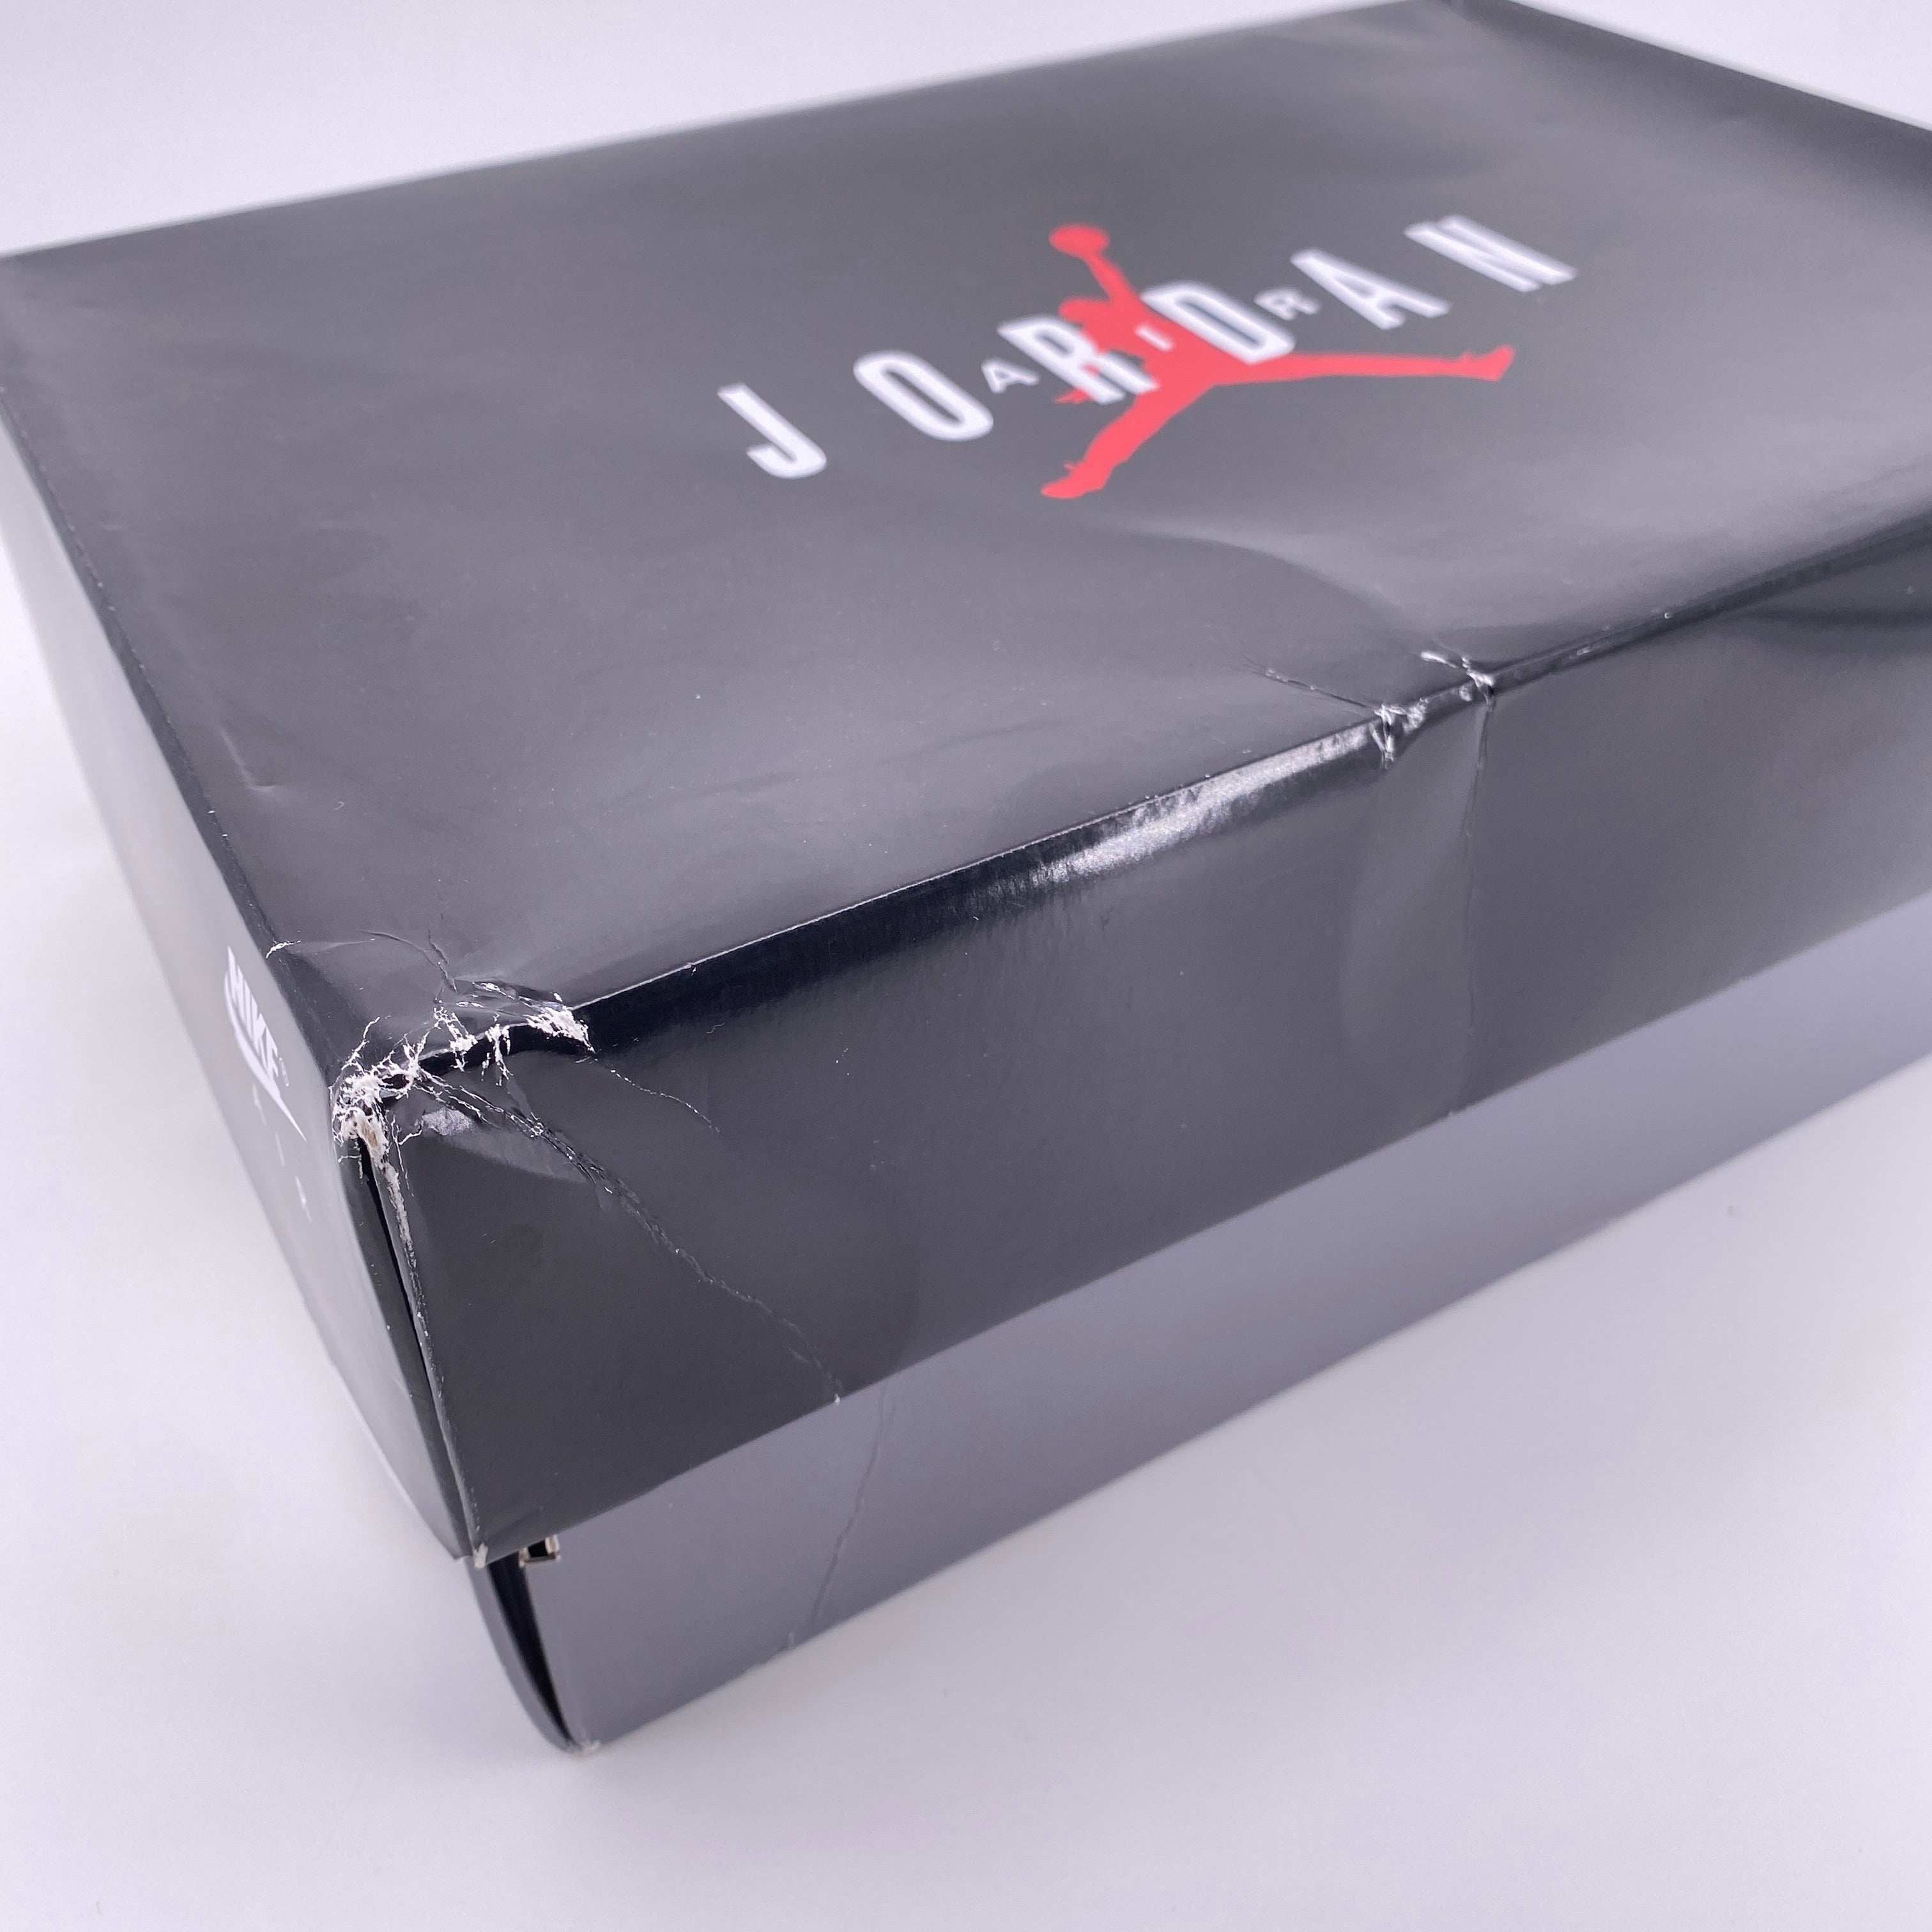 Air Jordan 11 Retro Low IE "Black Cement" 2020 New Size 10.5